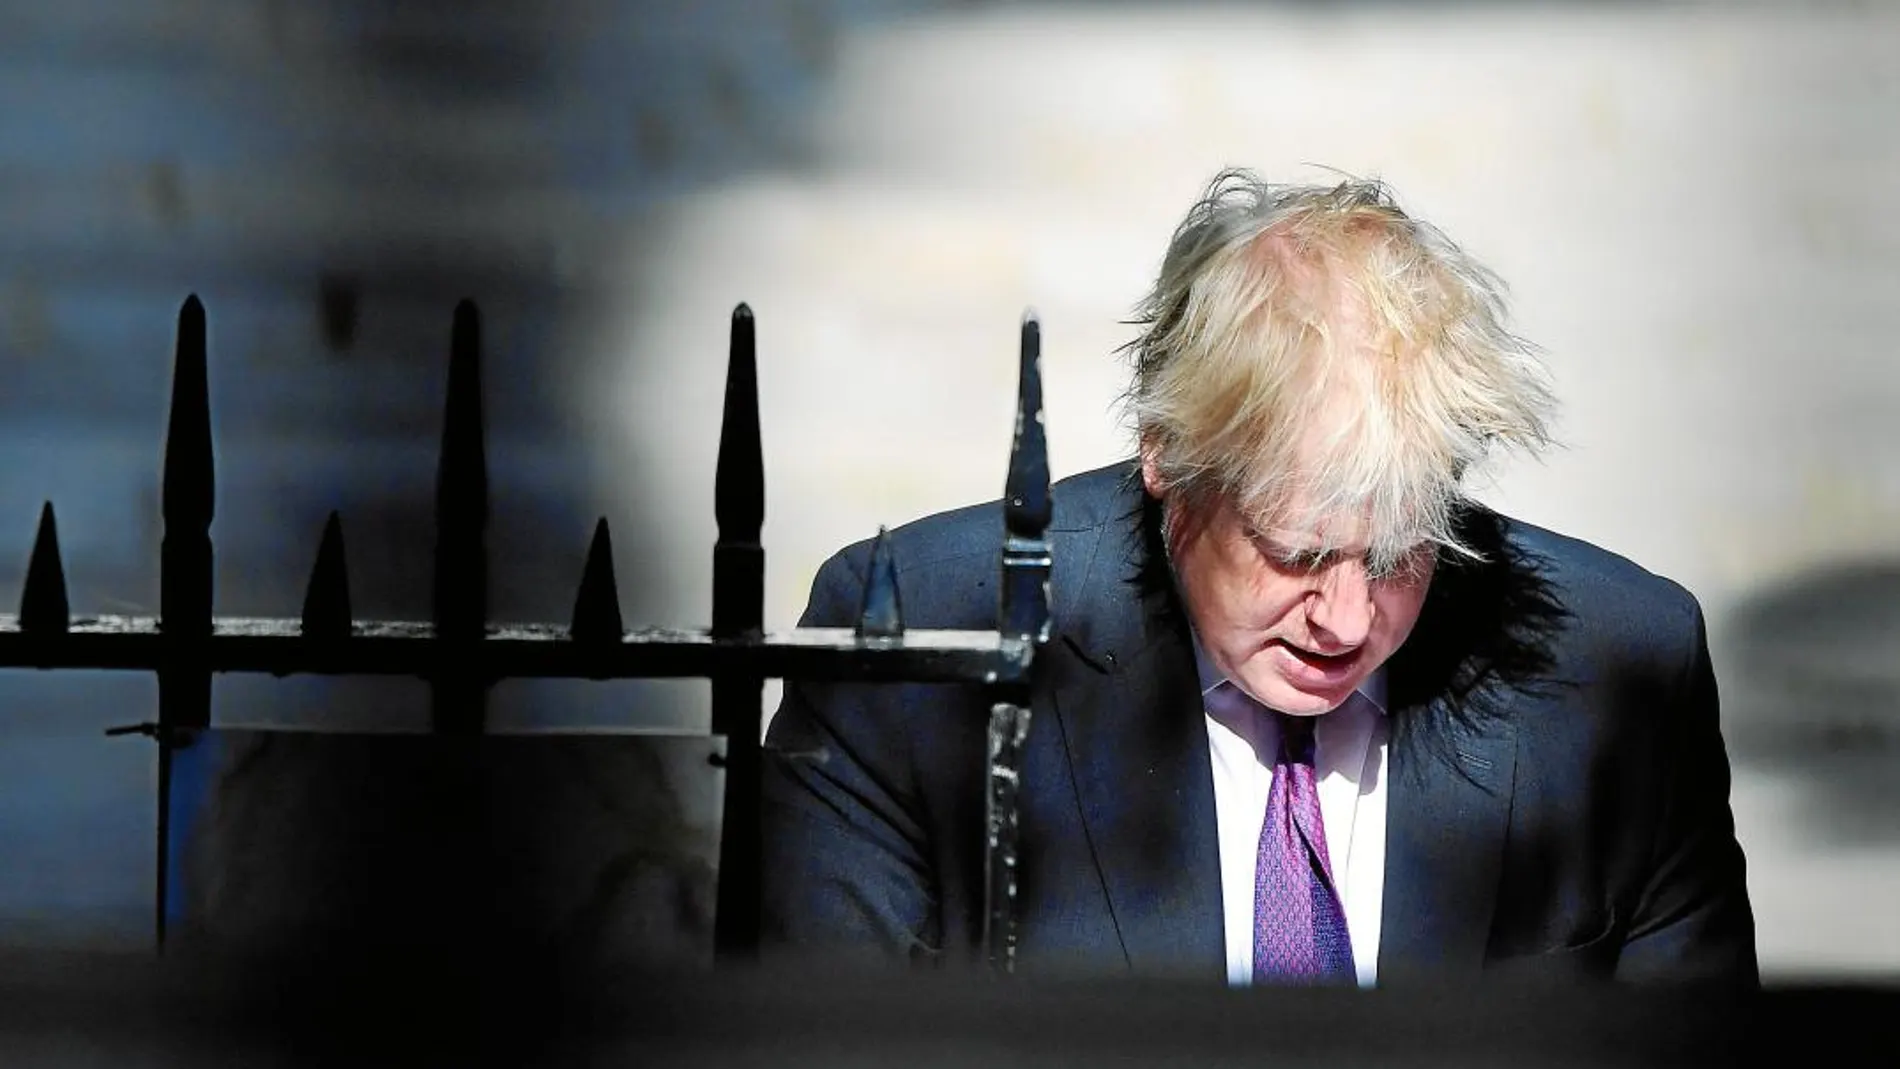 El ex ministro Boris Johnson acapara toda la atención a raíz de un artículo sobre el uso del burka y la política